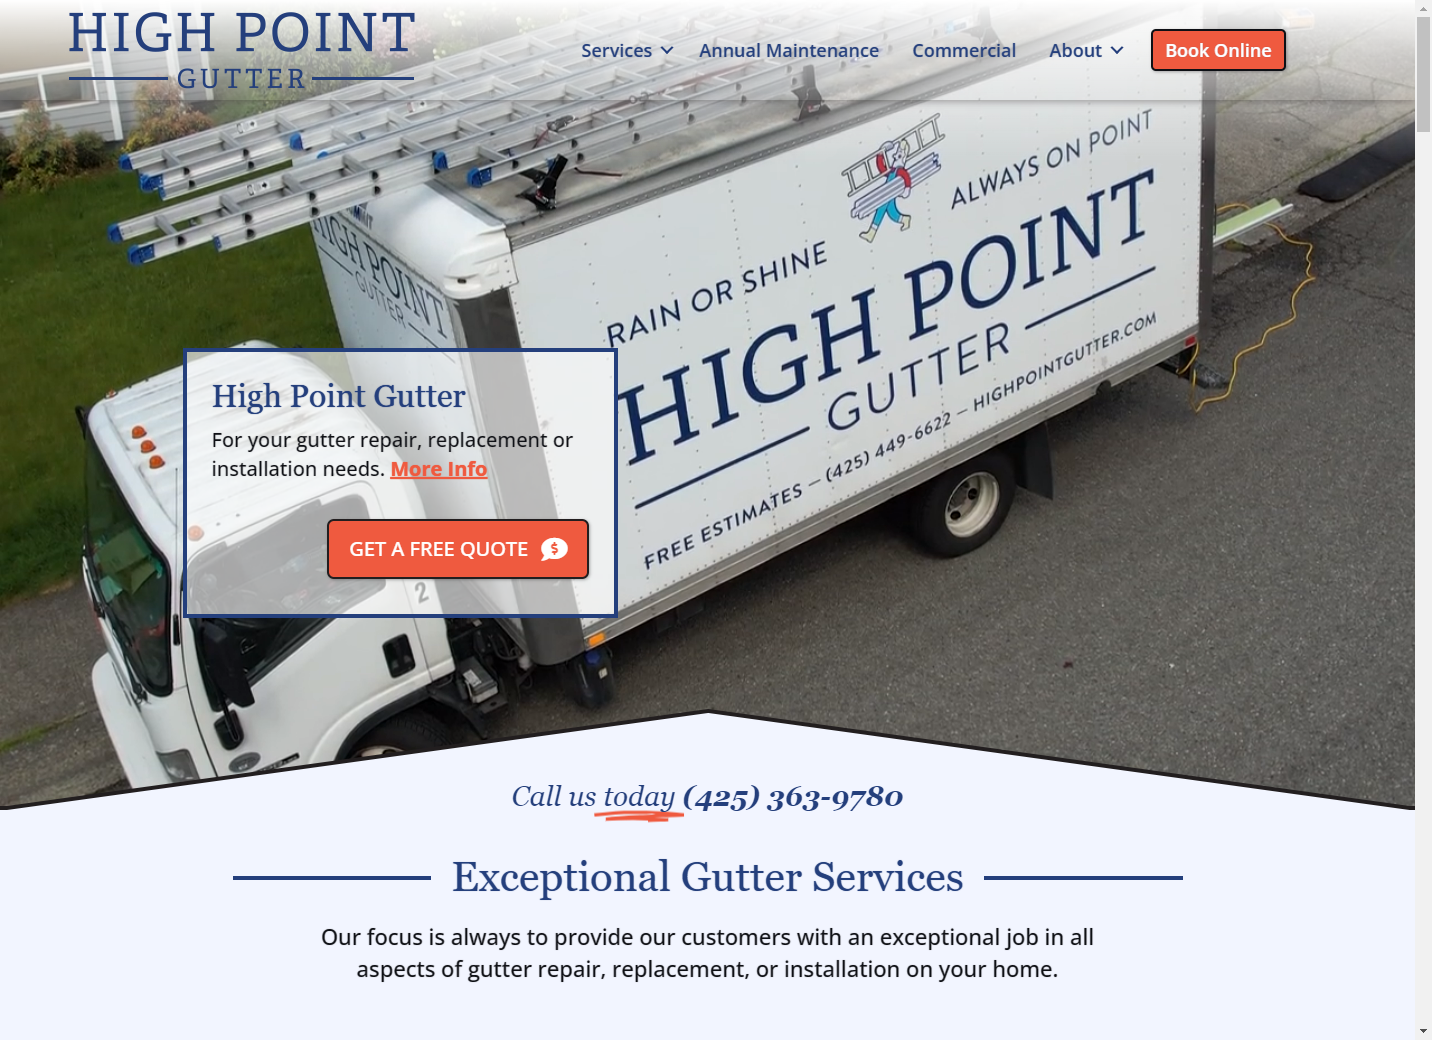 Custom web design for High Point Gutter